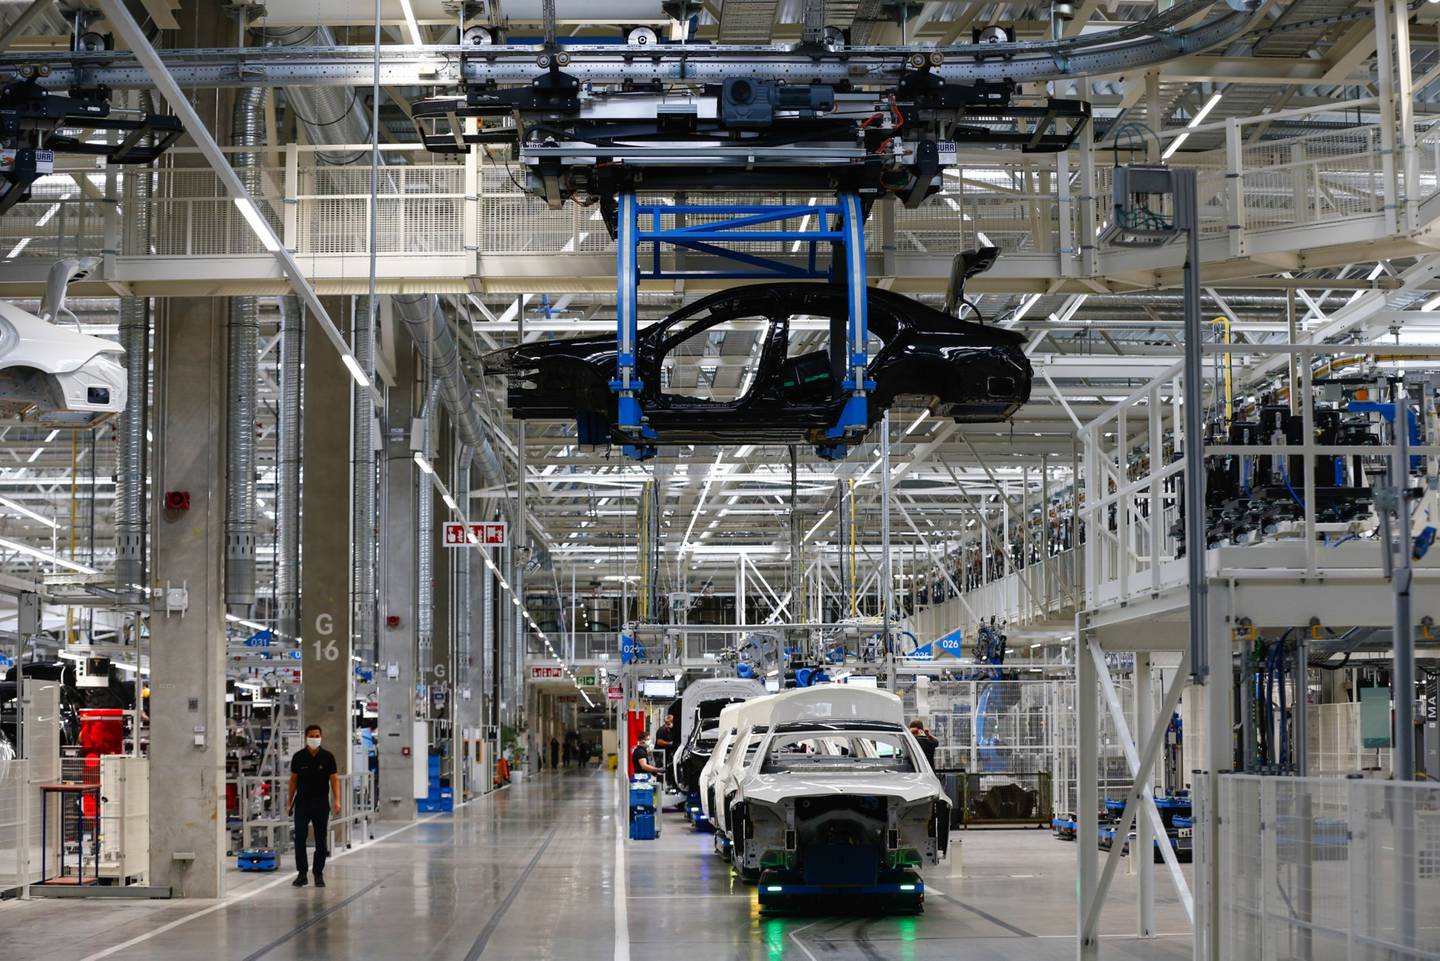 Los cuerpos de los sedanes de lujo de la Clase S se desplazan sobre plataformas robóticas autónomas en la fábrica de Mercedes-Benz AG en Sindelfingen, Alemania. Fotógrafo: Michaela Handrek-Rehle/Bloomberg